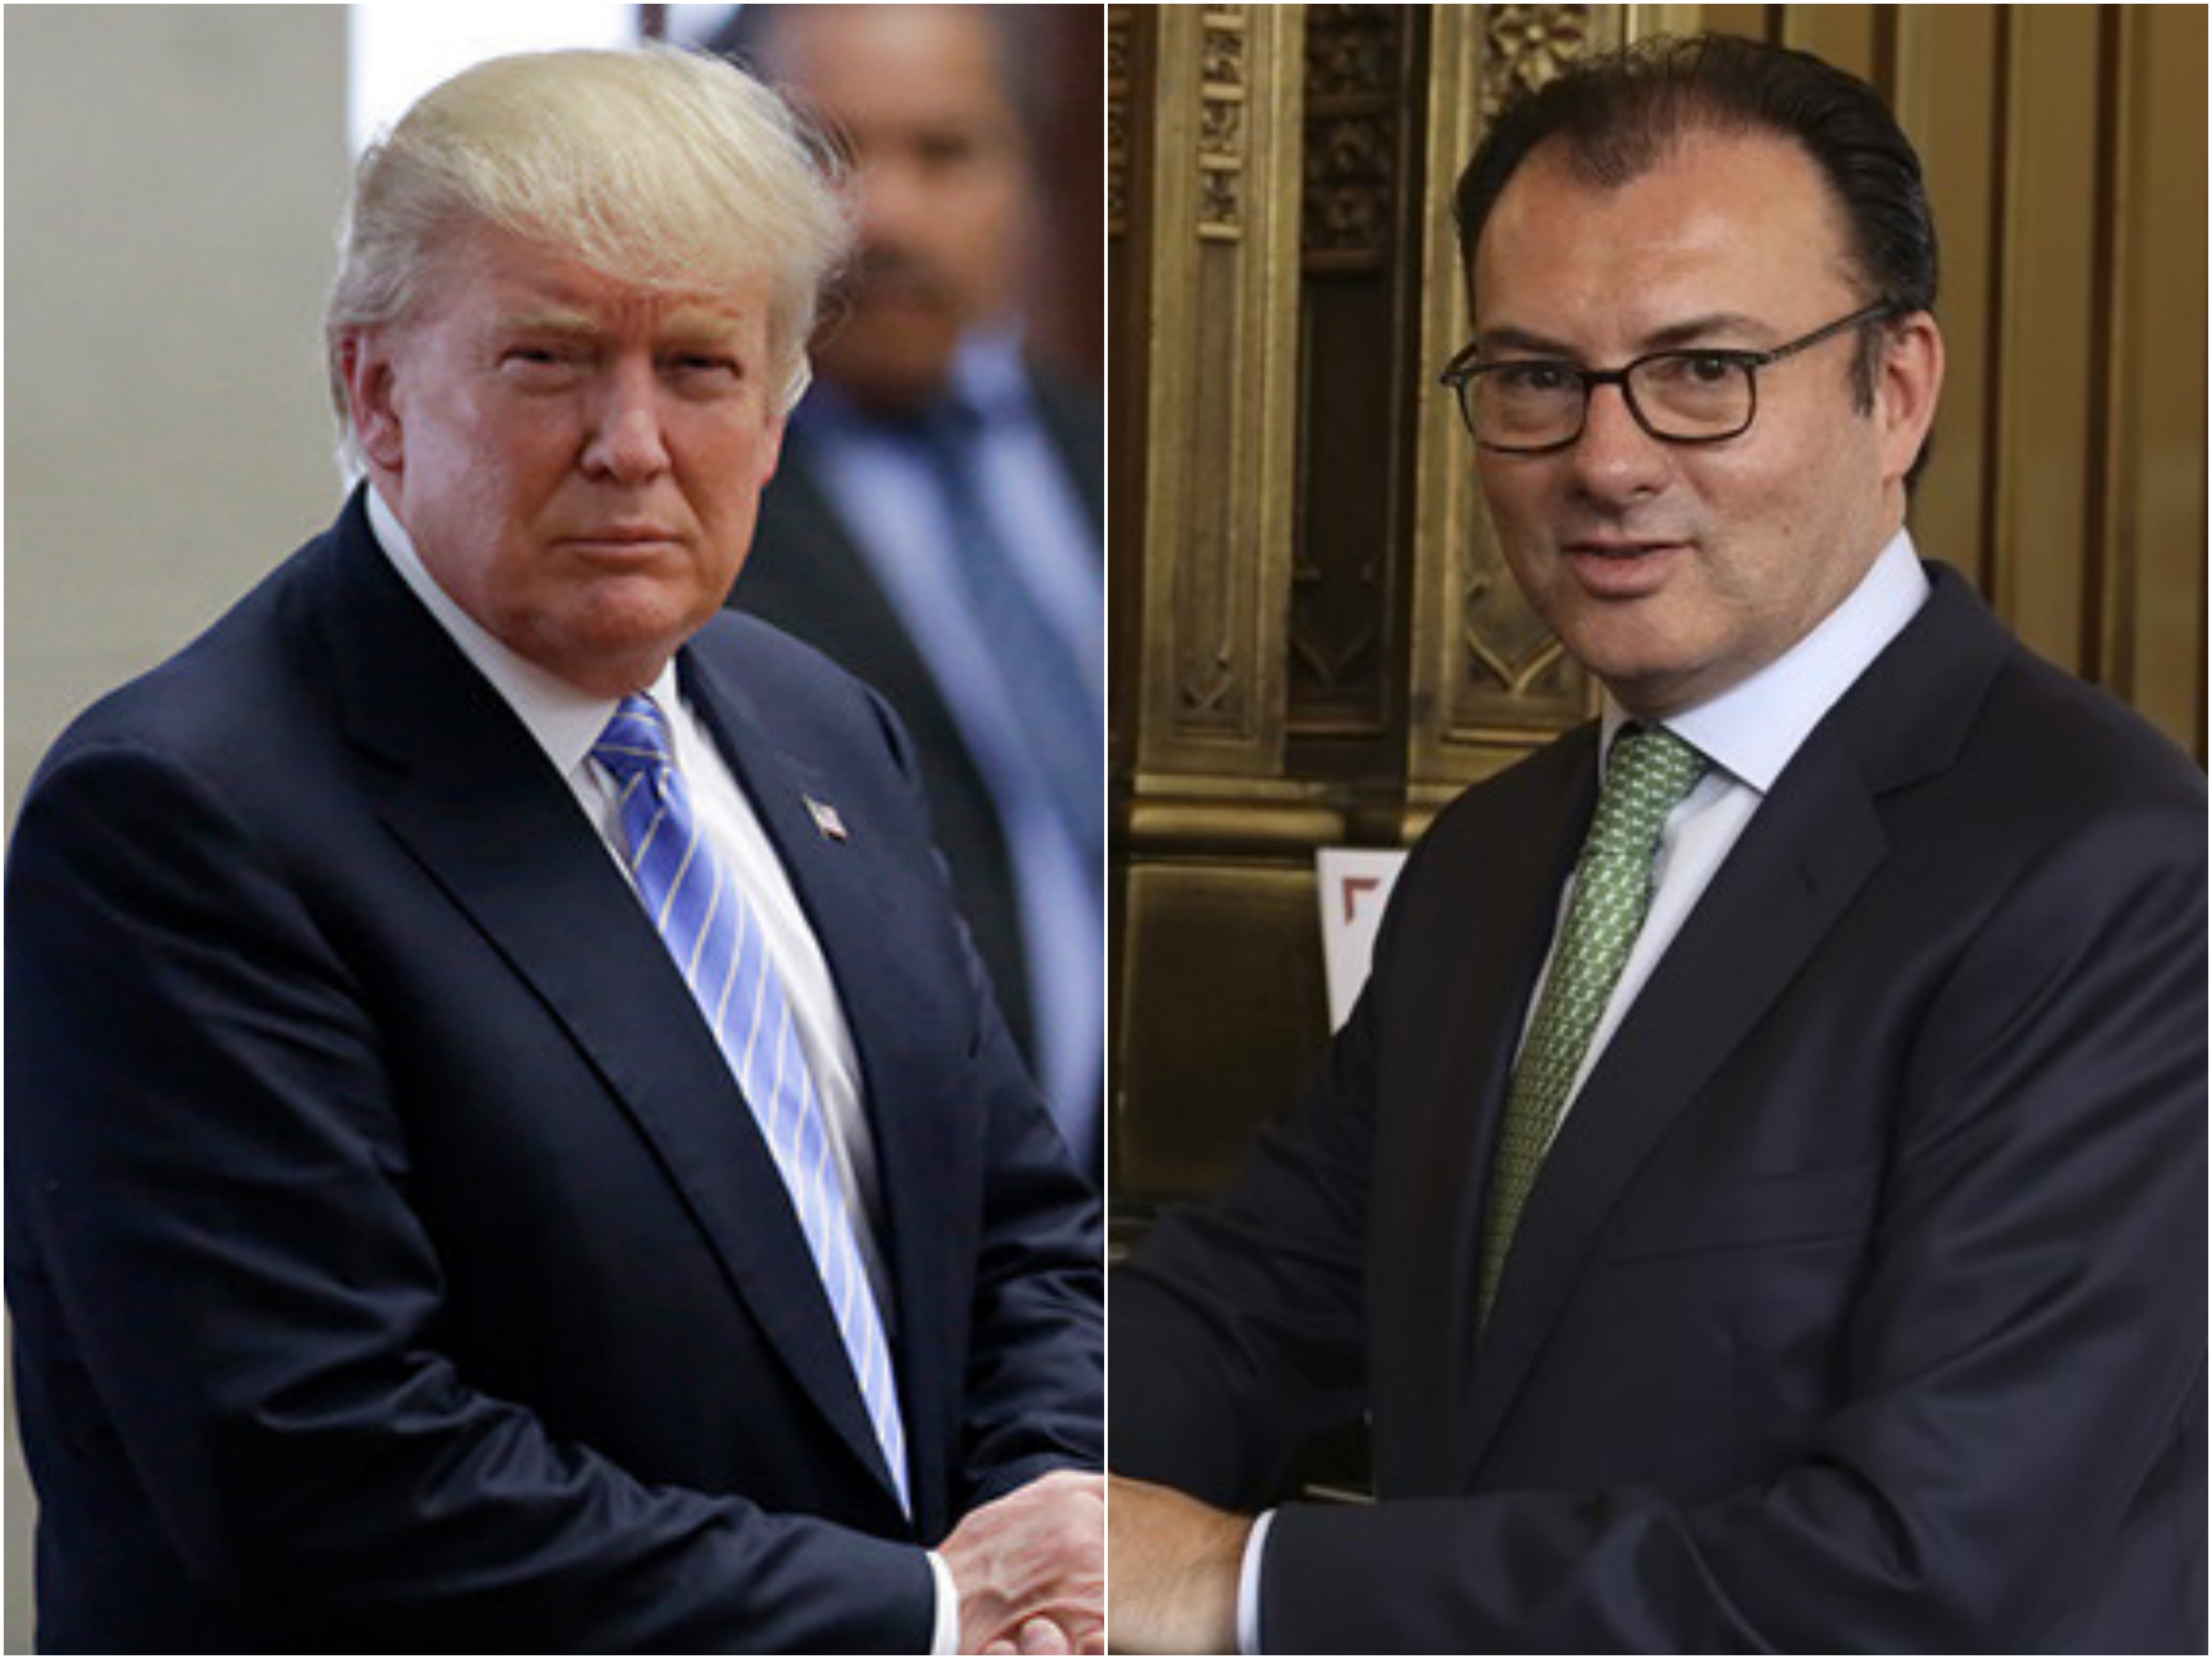  México perdió a un brillante secretario: Donald Trump